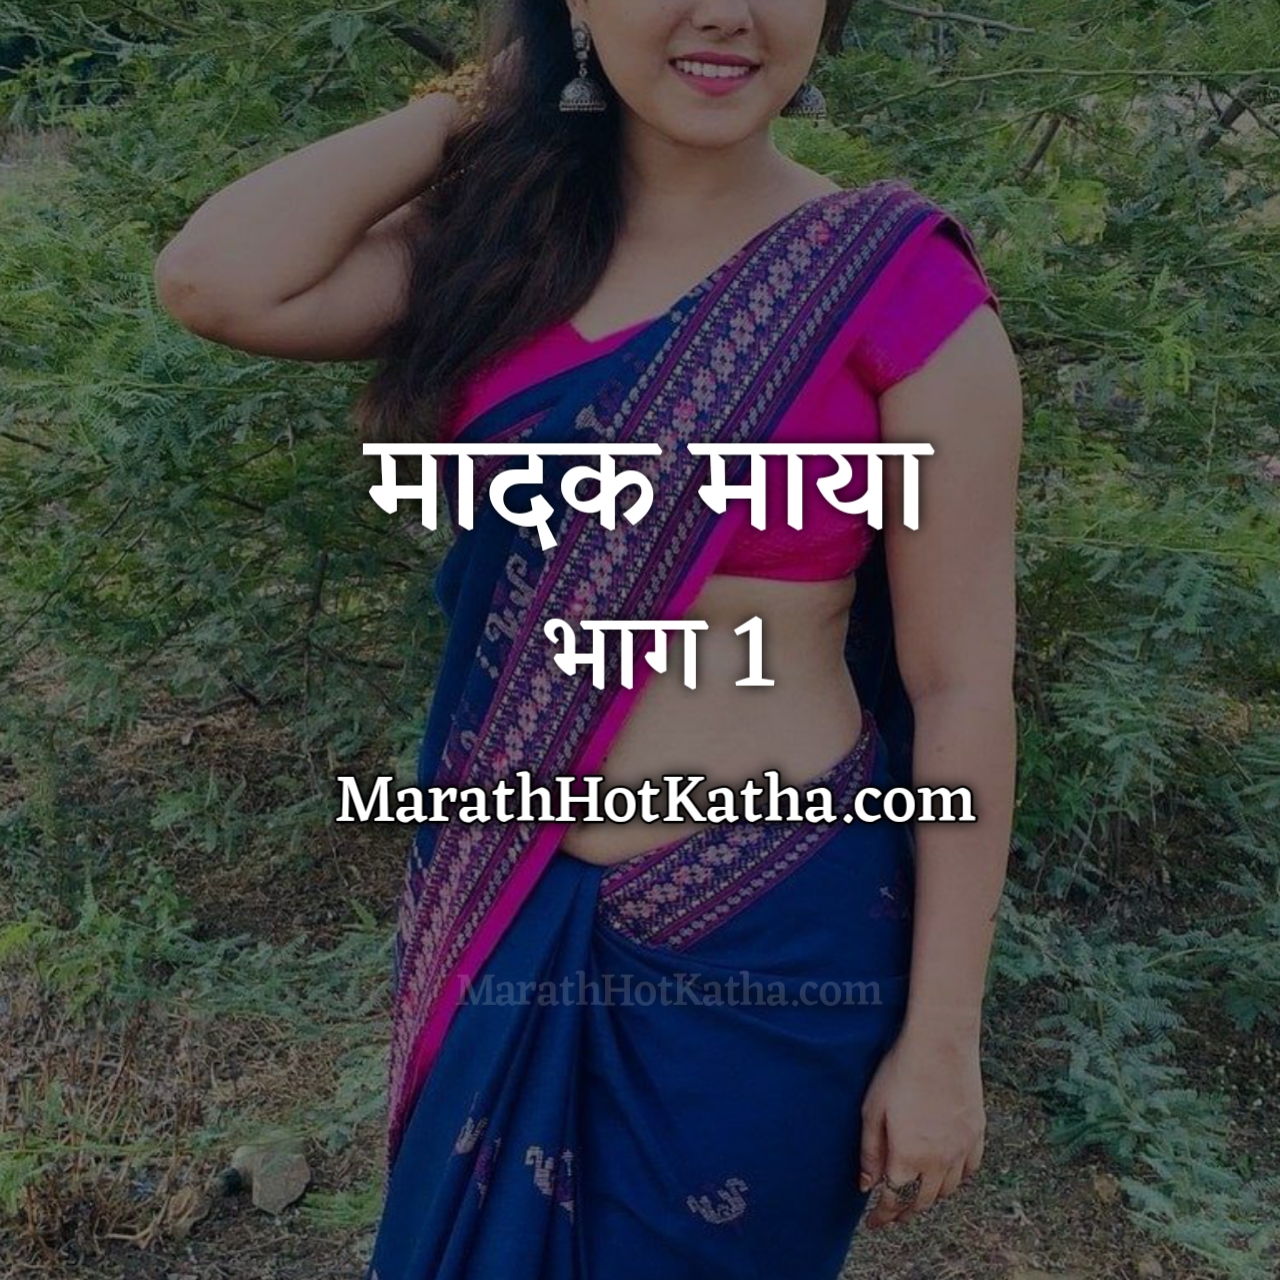 Sambhog marathi katha